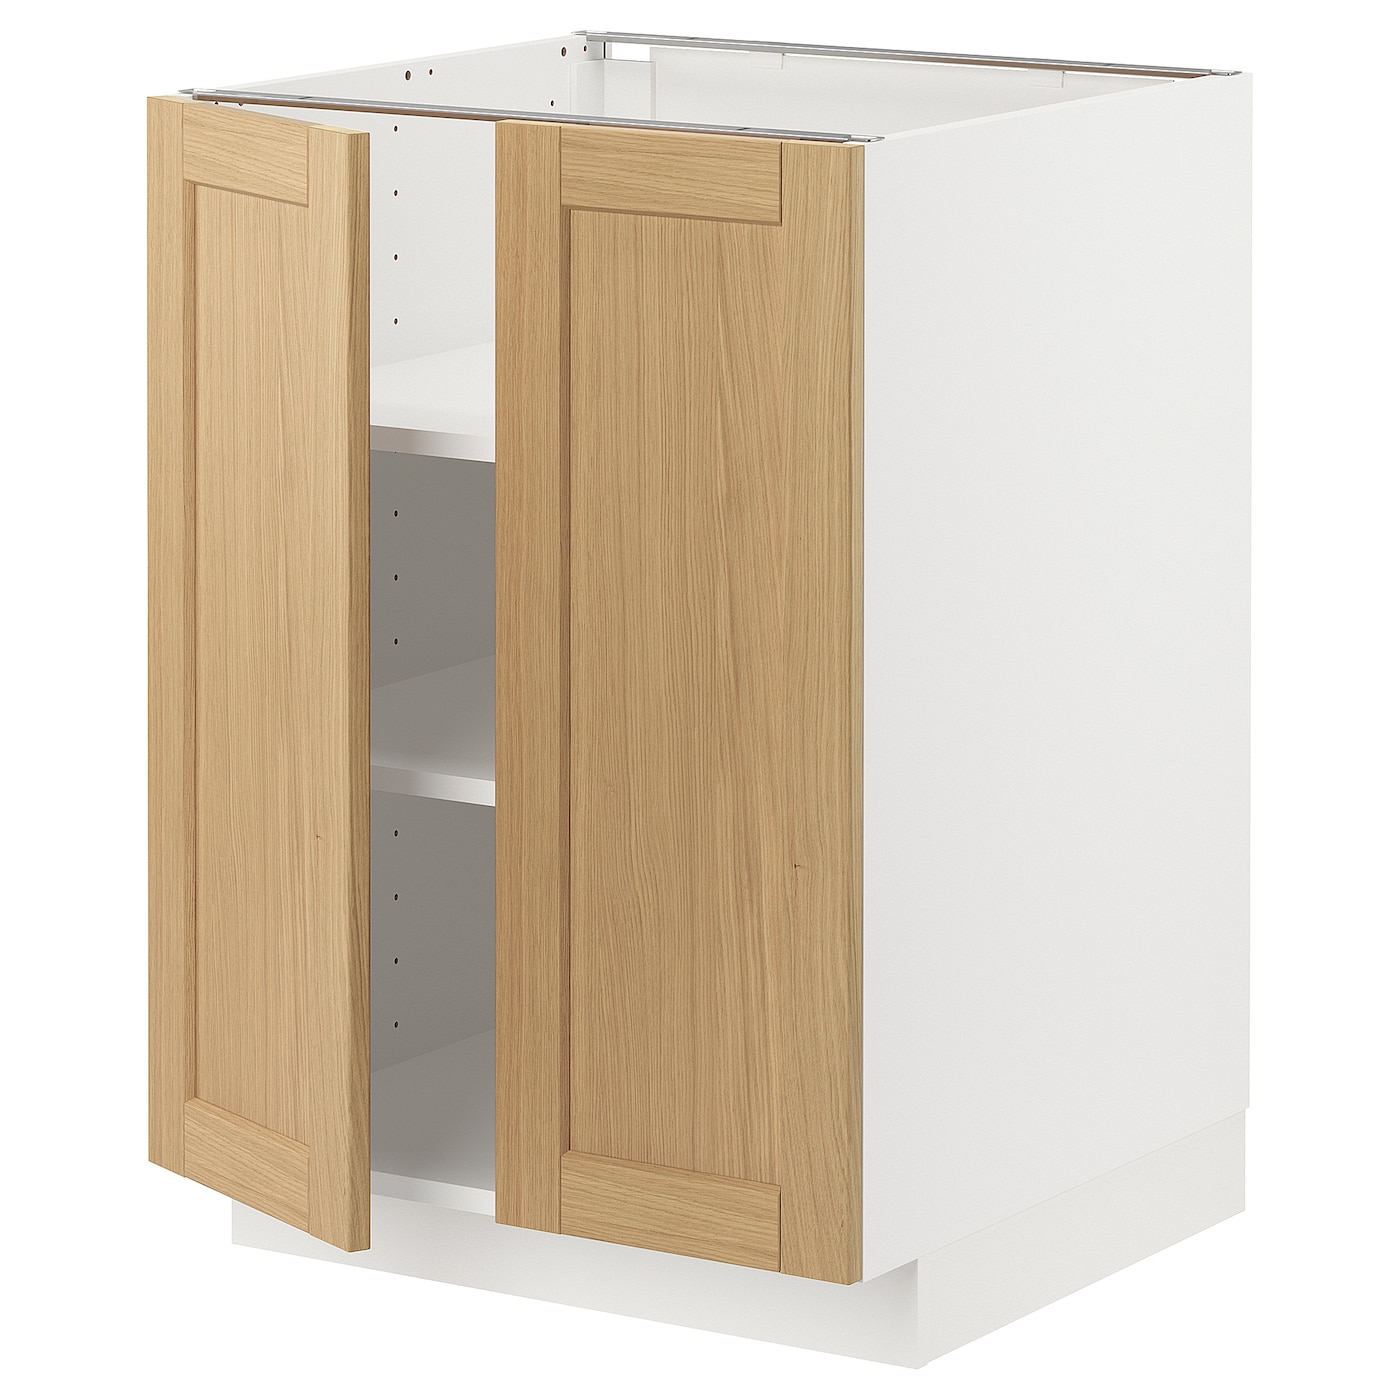 Напольный шкаф - METOD IKEA/ МЕТОД ИКЕА,  60х60  см, белый/под беленый дуб